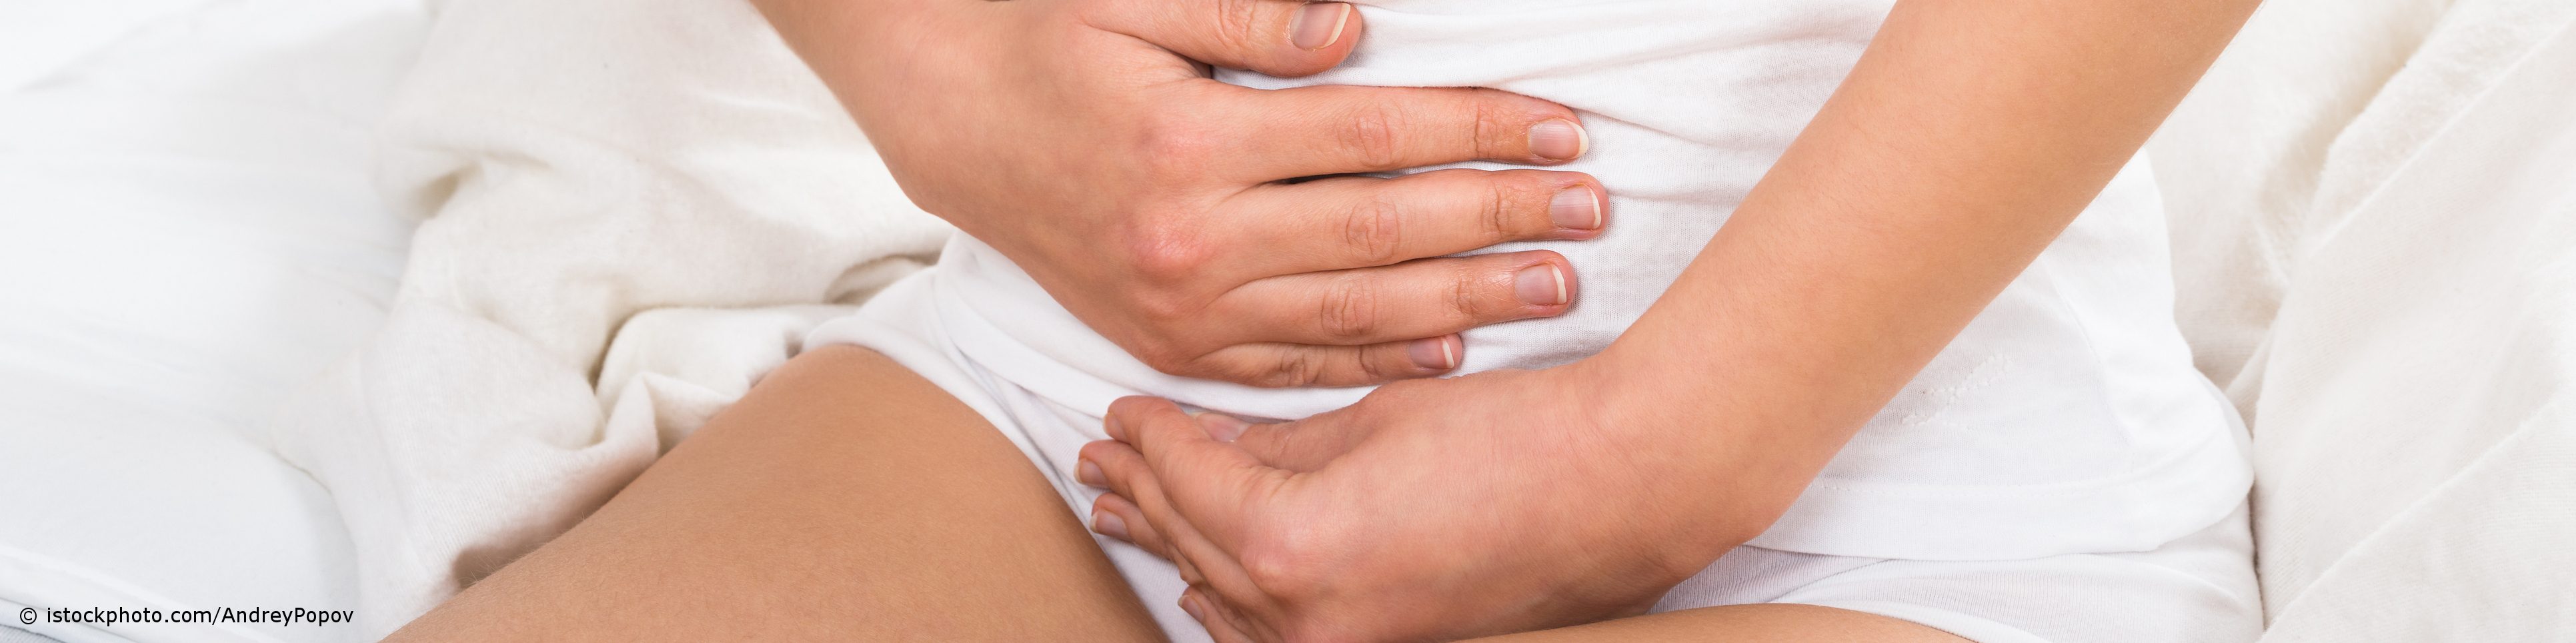 Krampfartige Schmerzen im Unterbauch sind typisch für eine Blasenentzündung.